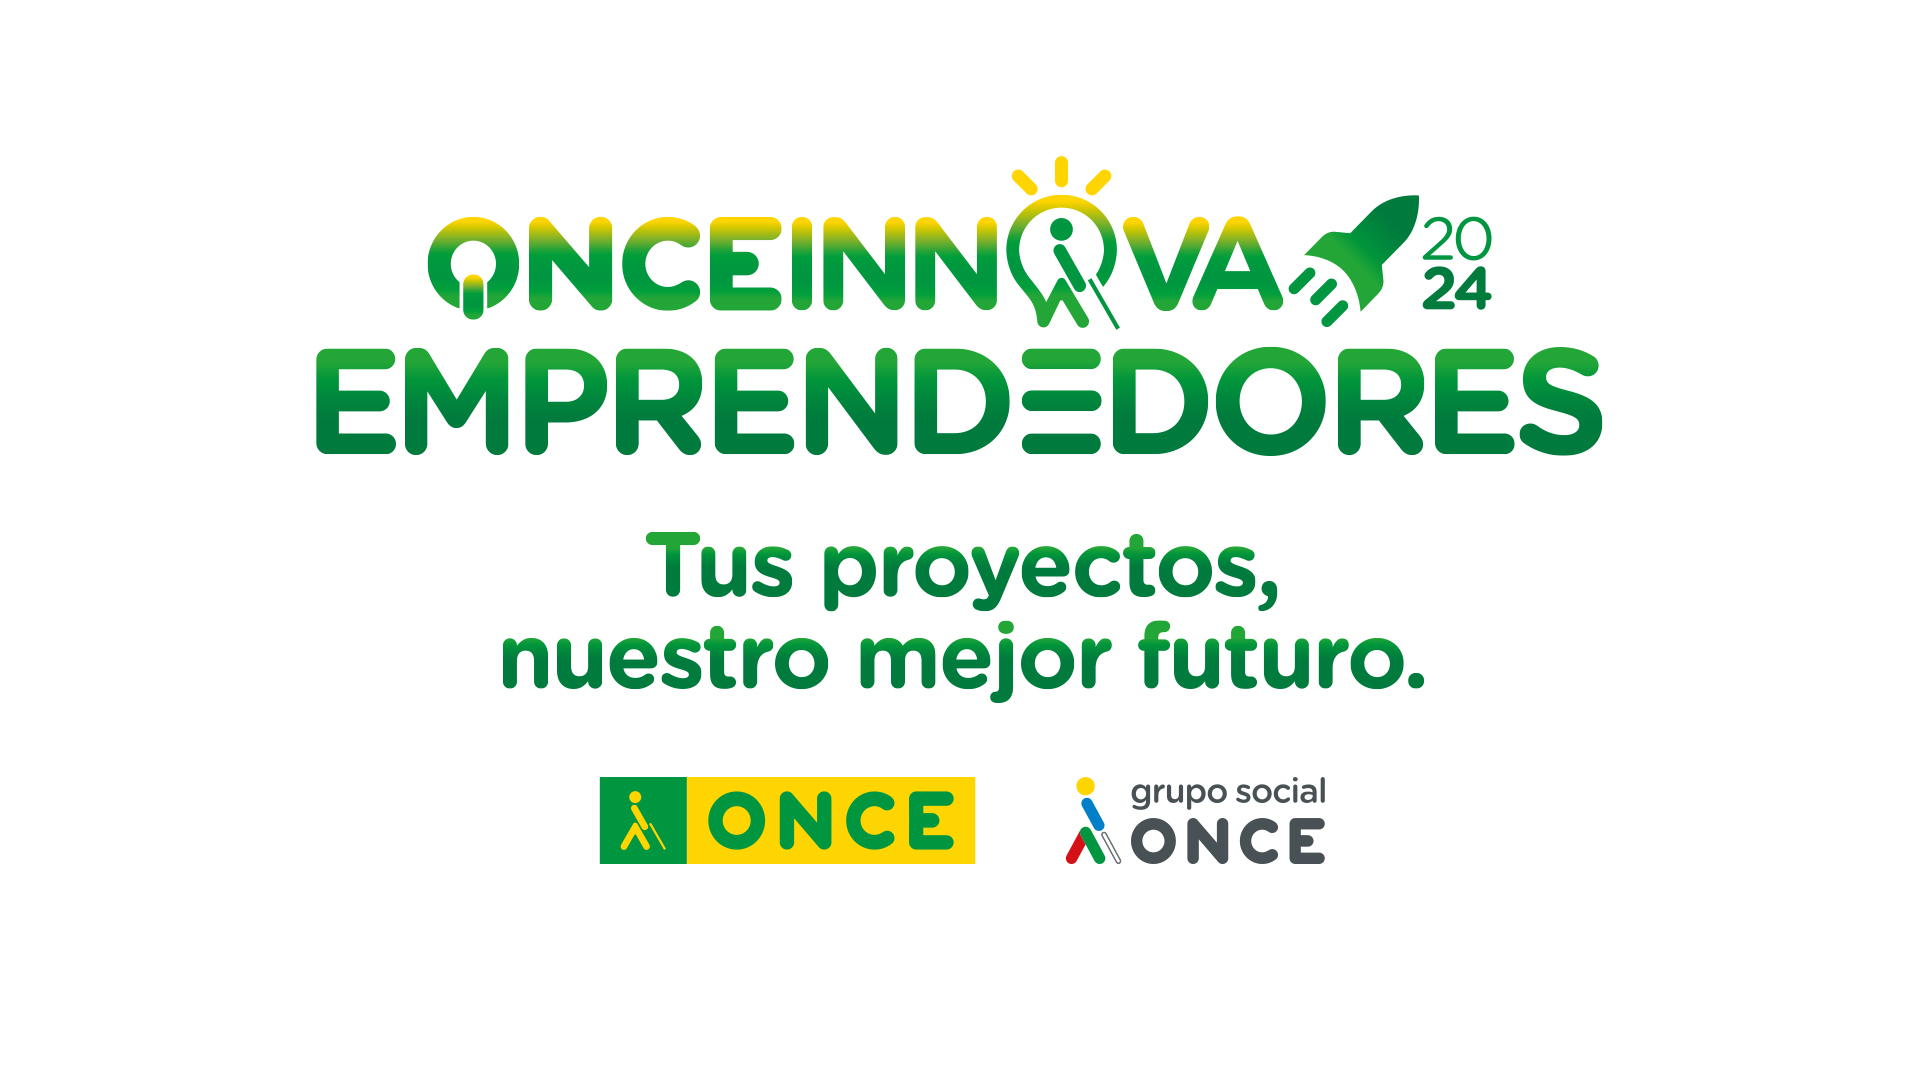 Imagen del Reto ONCE Innova Emprendedores 2024, donde sale el slogan "Tus proyectos, nuestro mejor futuro" y los logos de ONCE y de Grupo Social ONCE 